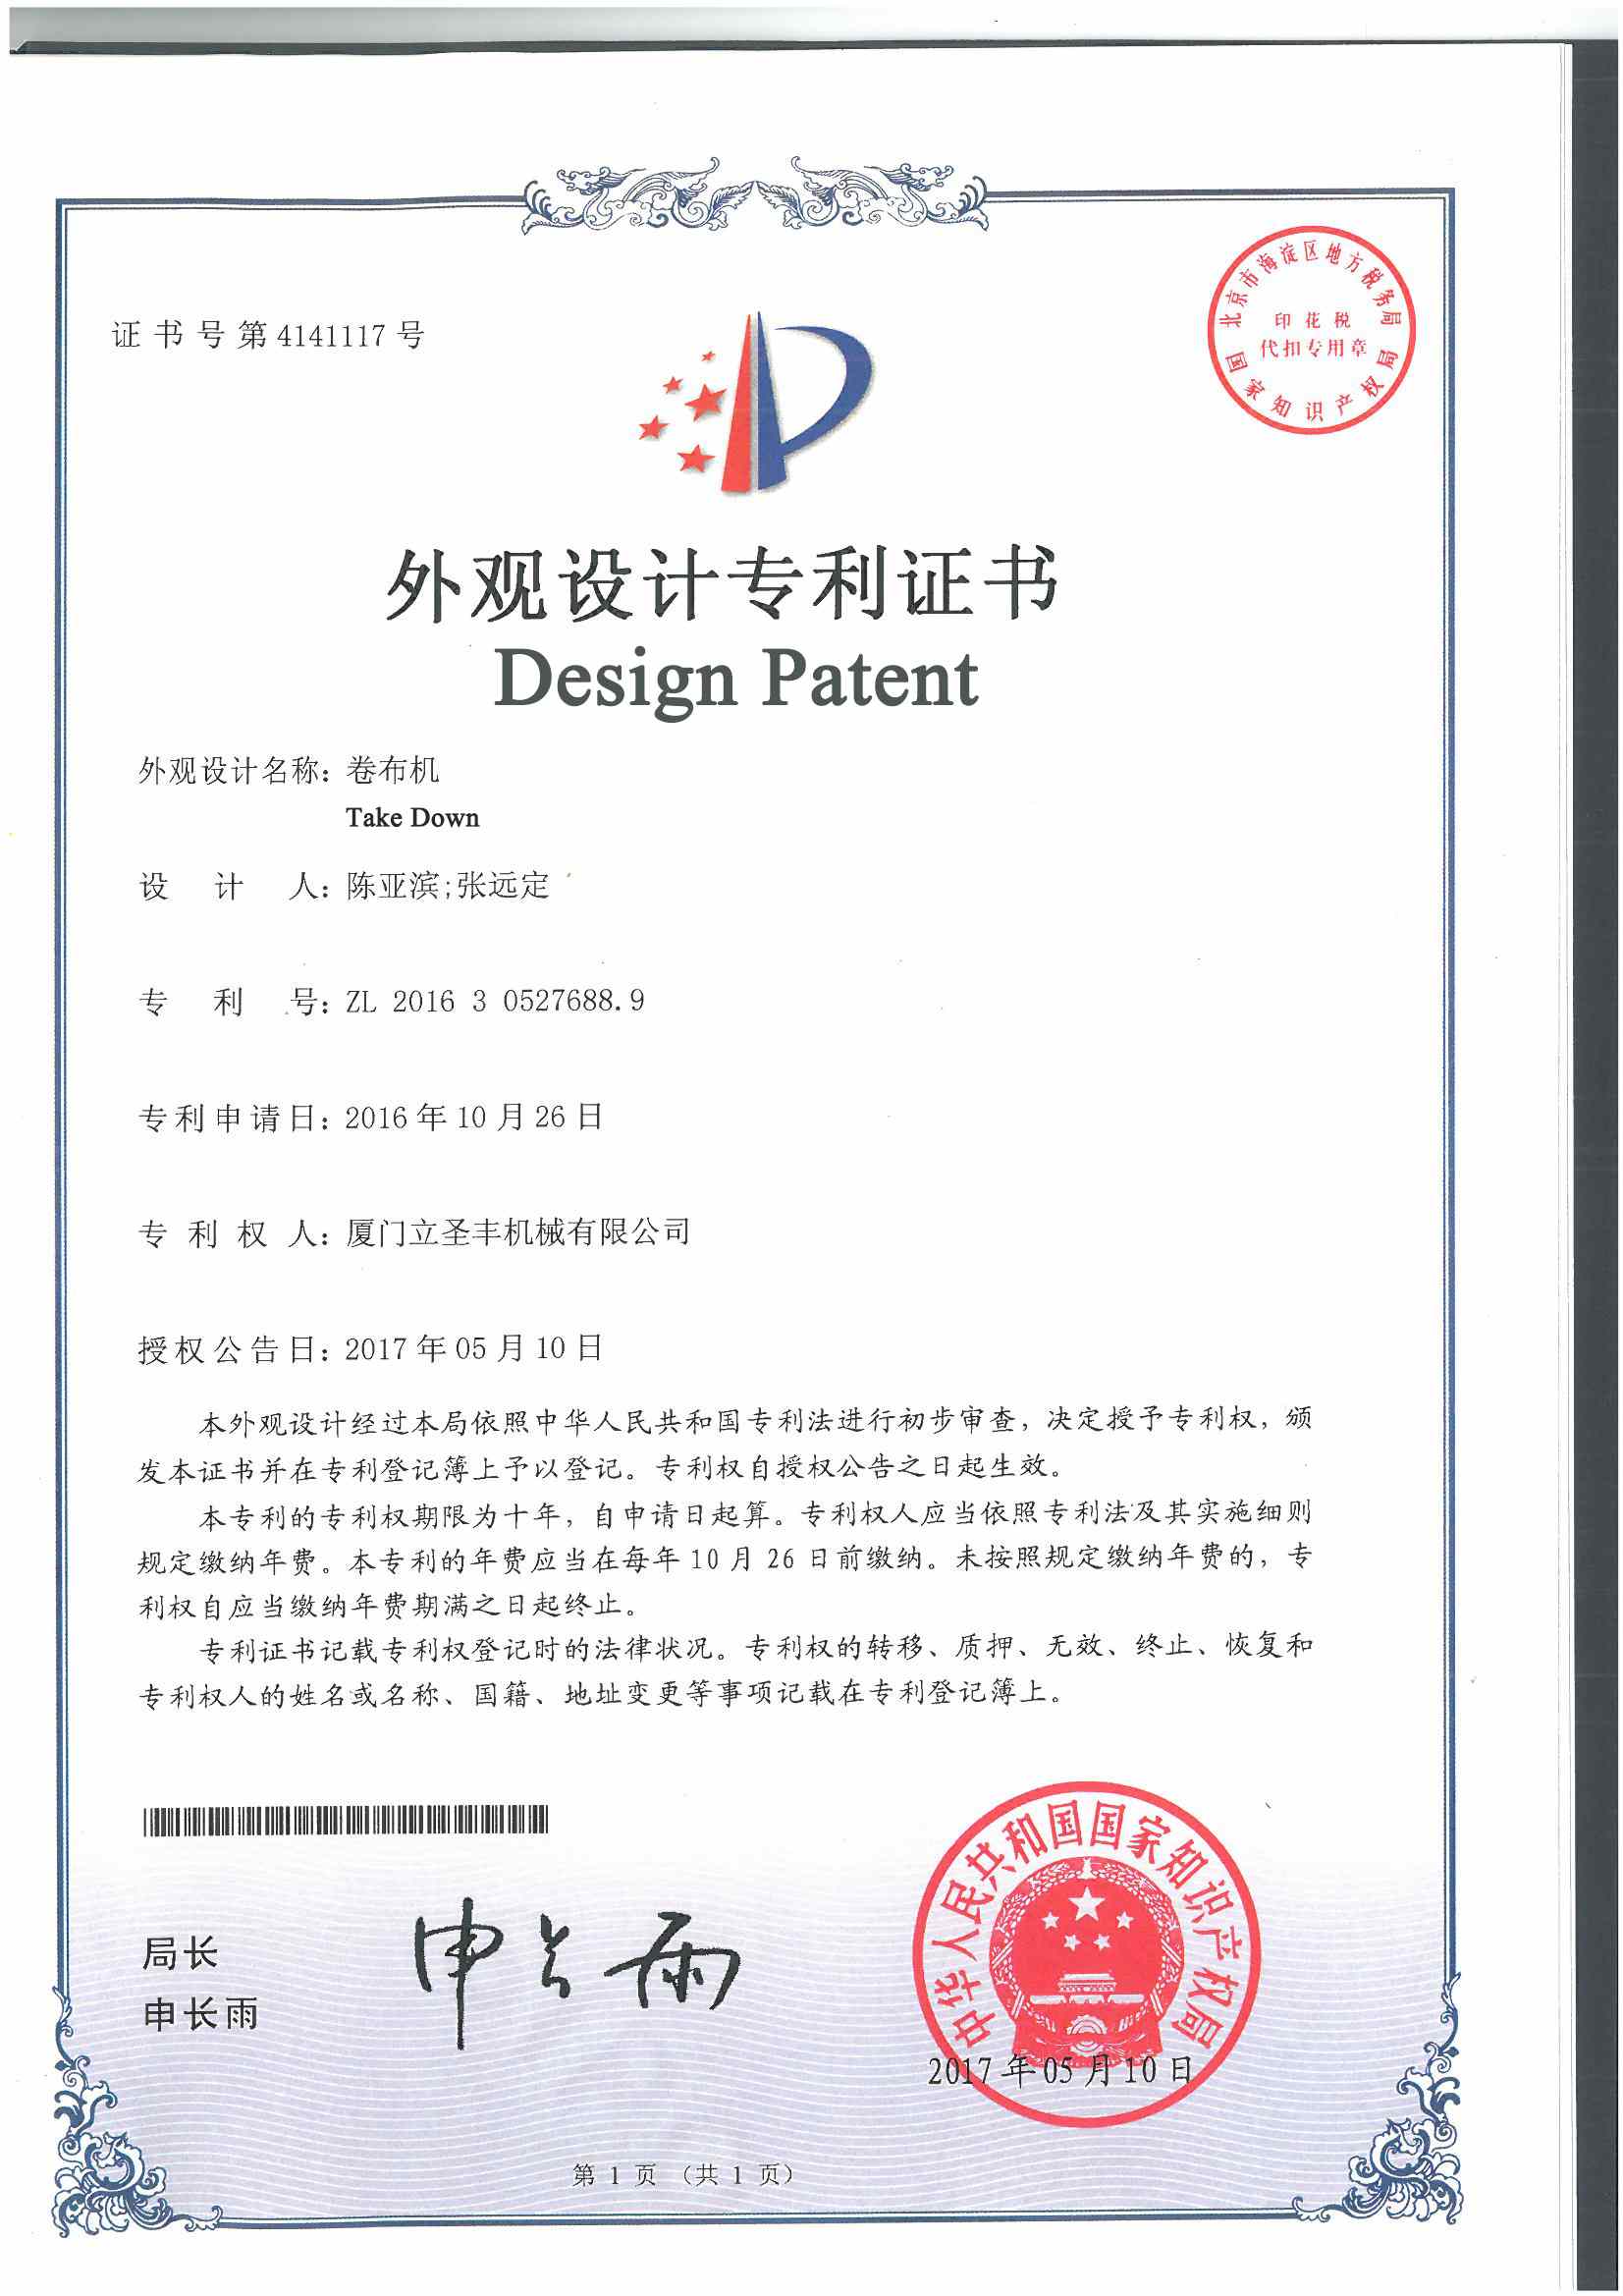 patentler
